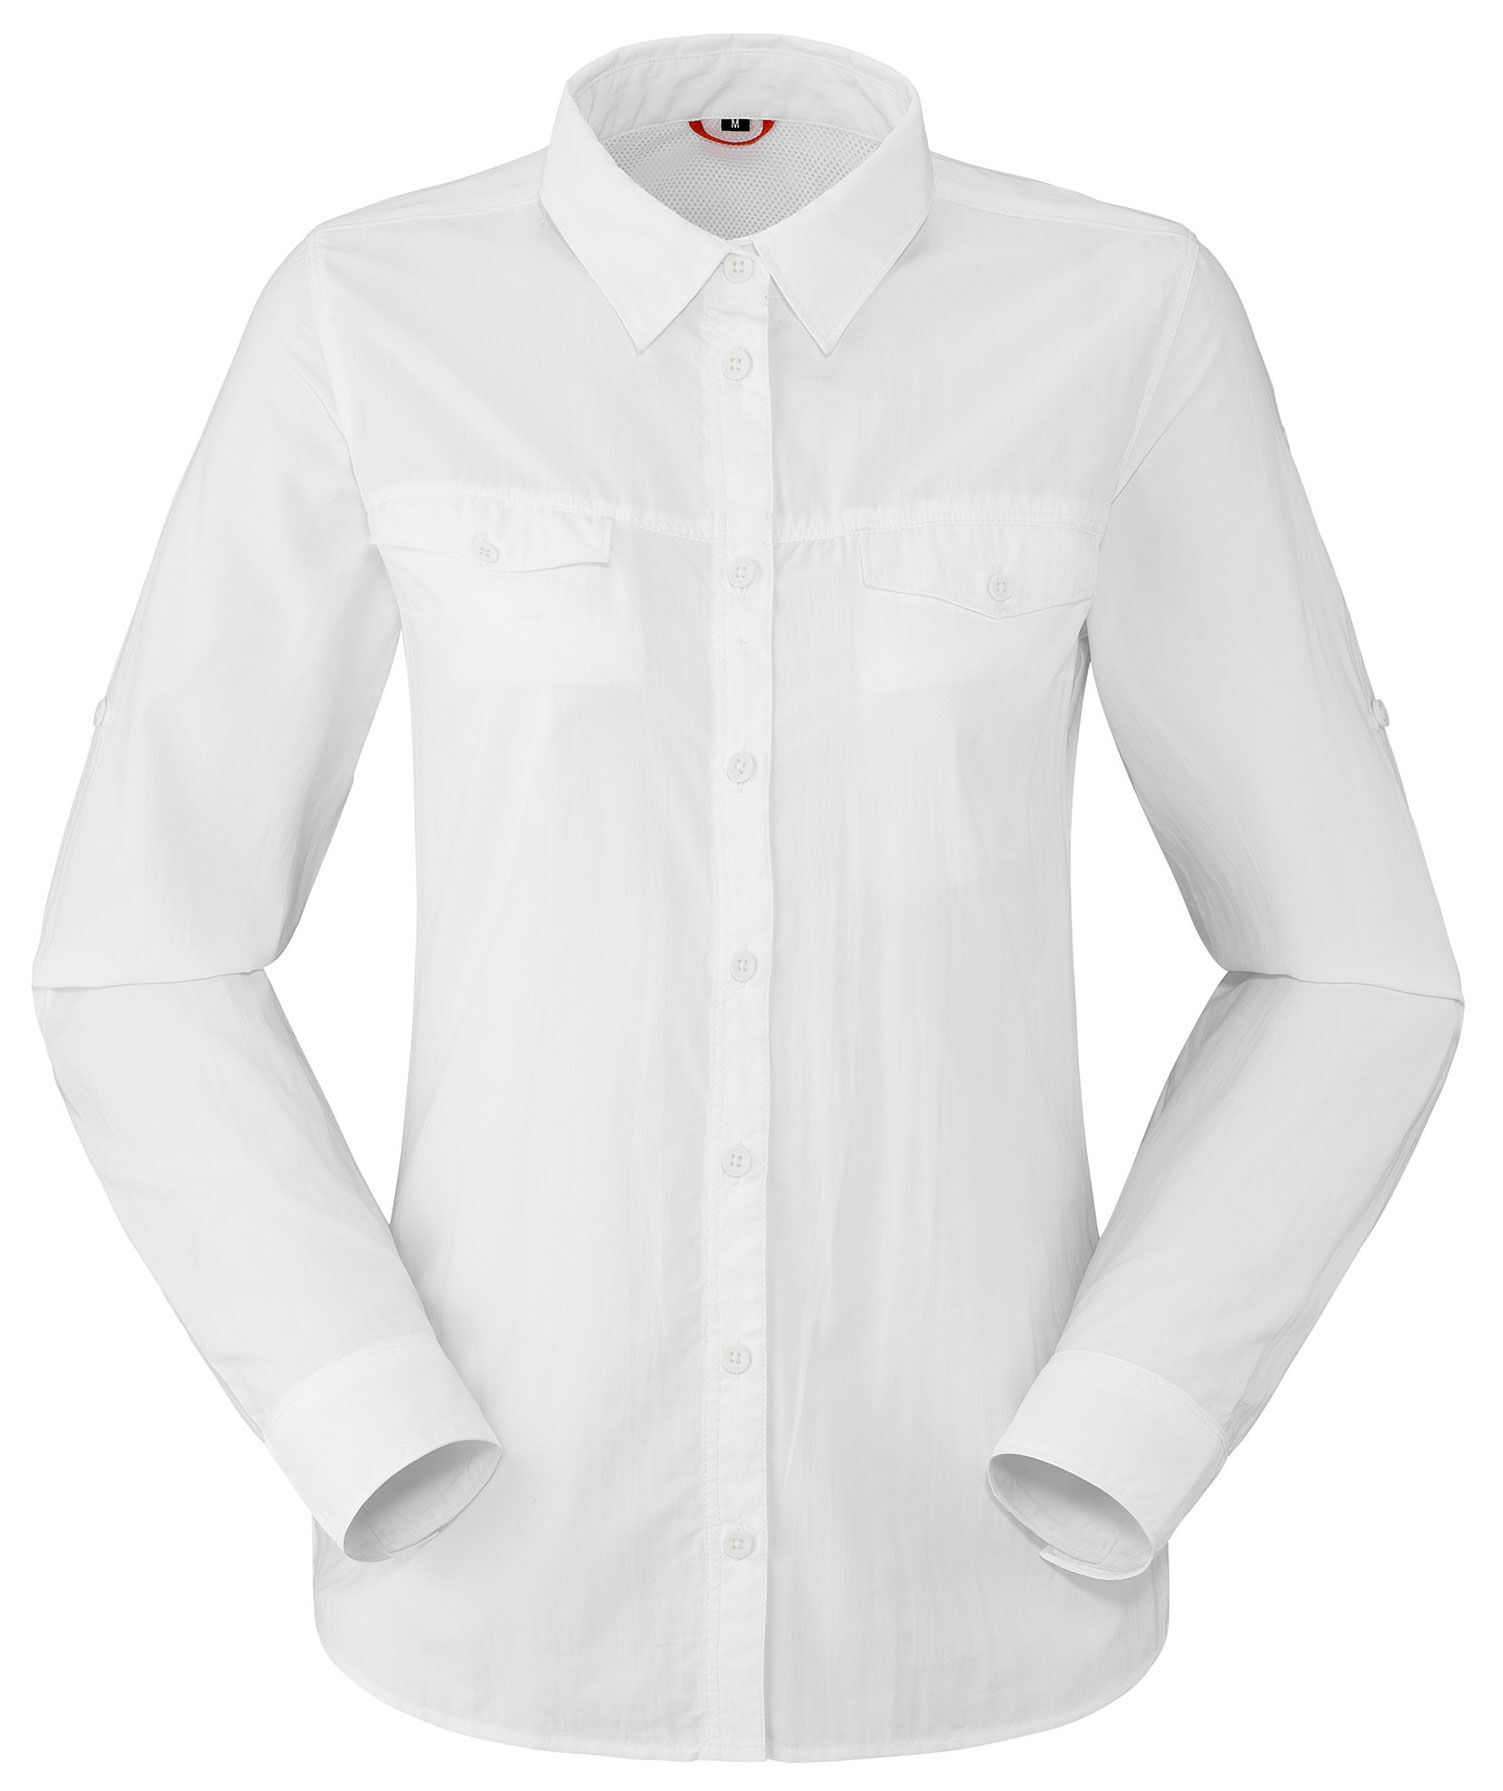 Lafuma - LD Shield Shirt - Camicia - Donna